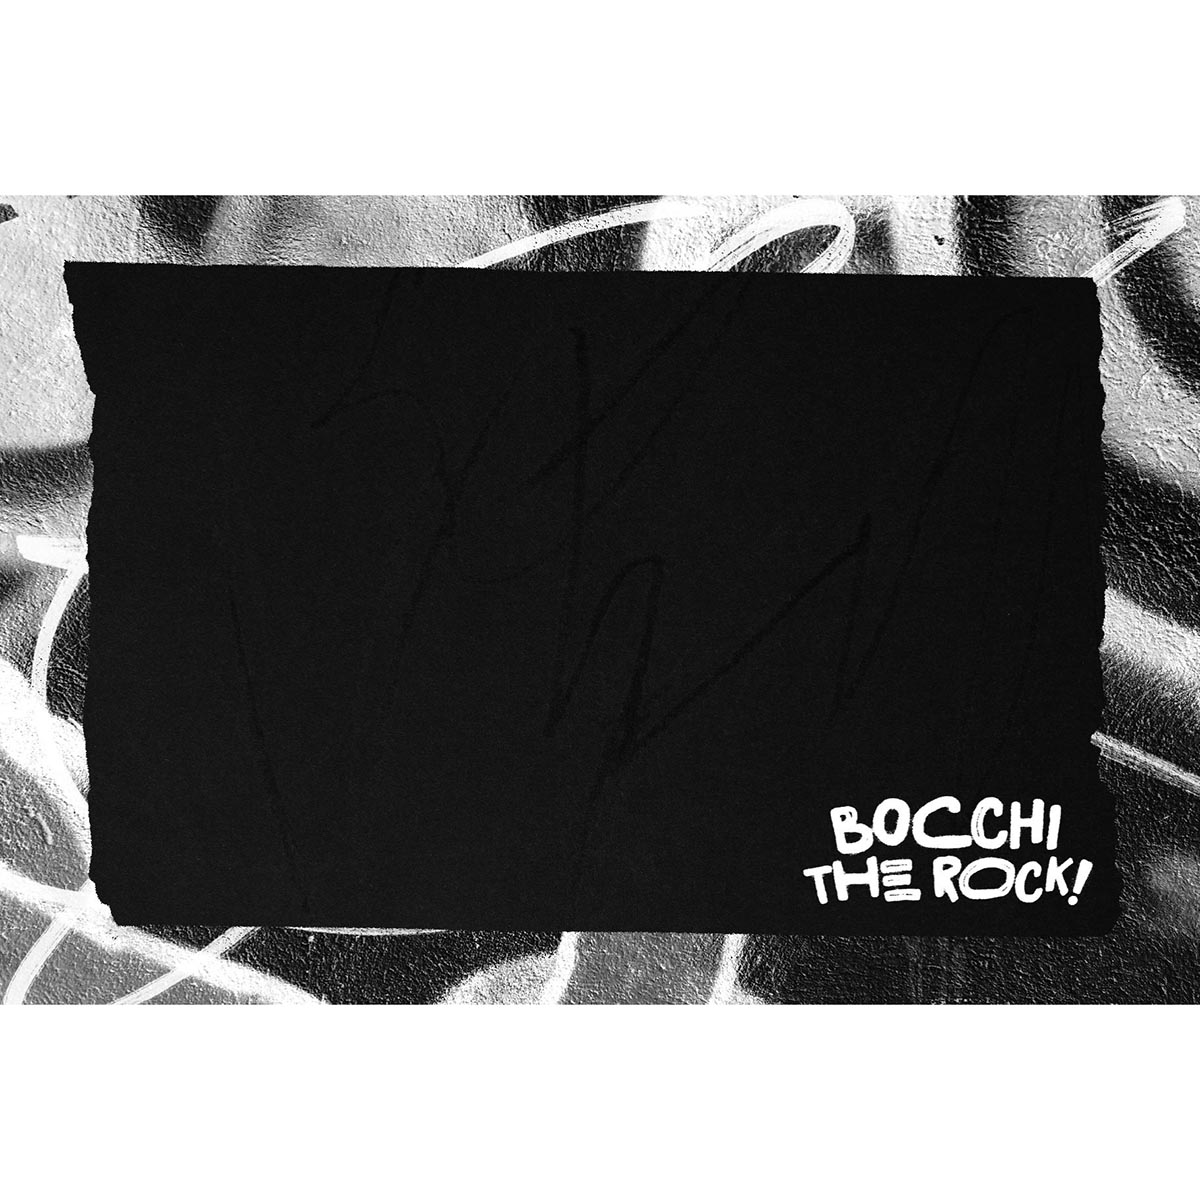 Bocchi The Rock! Tập 1 [Tặng Kèm Bìa Áo Đặc Biệt + Bookmark]